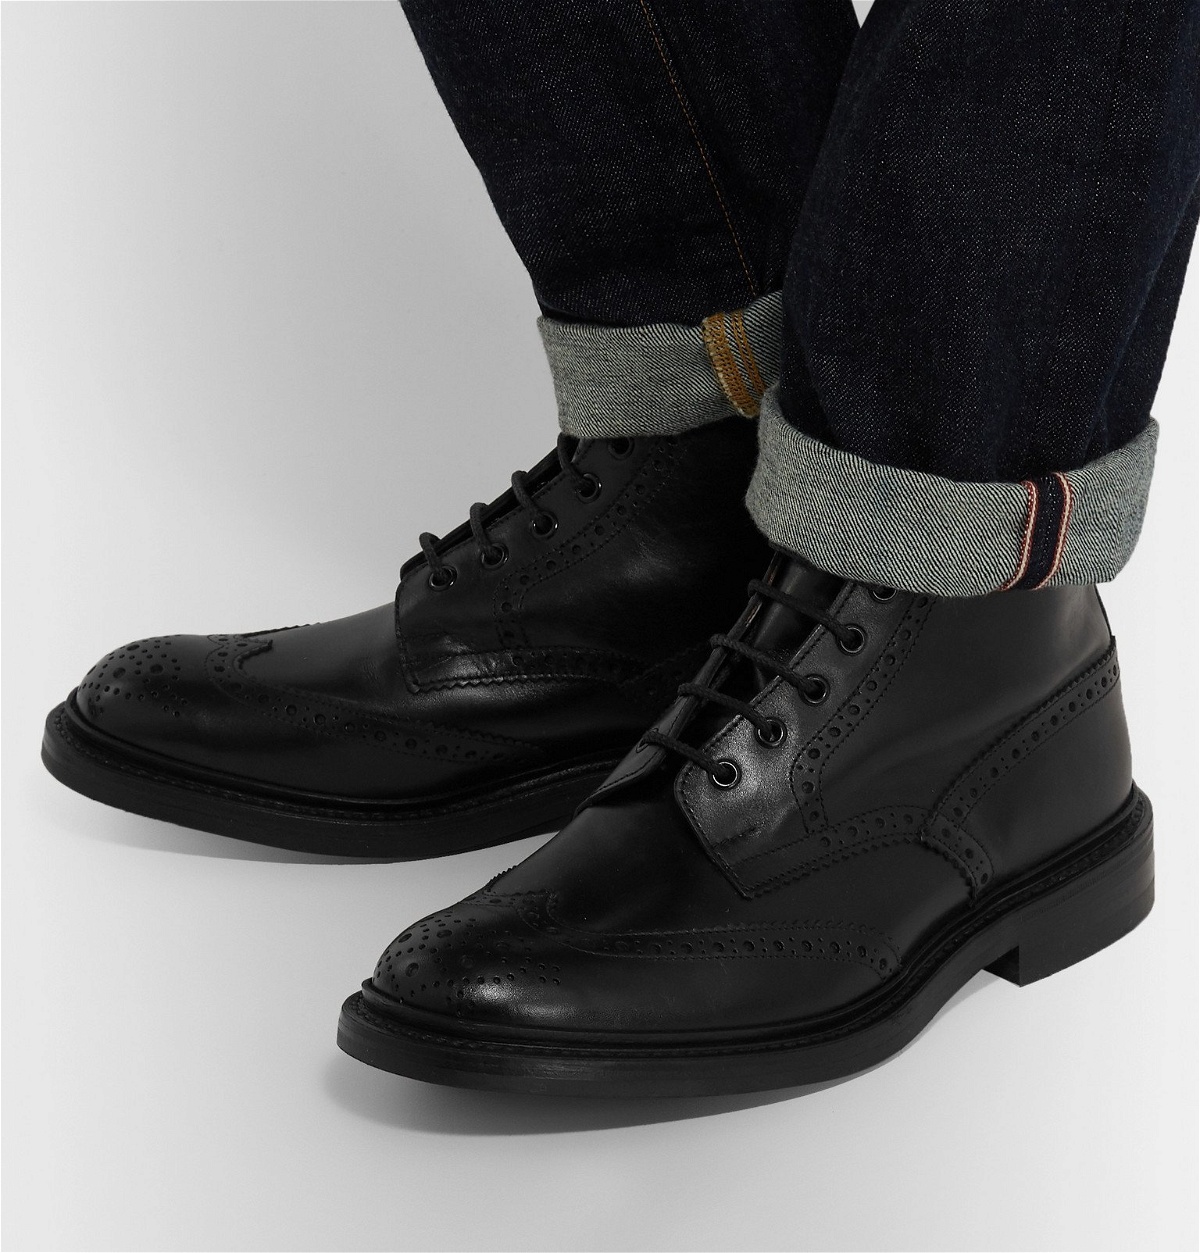 ソールはDainiteですTricker’s Brogue Boots UK7 Fit5 Black